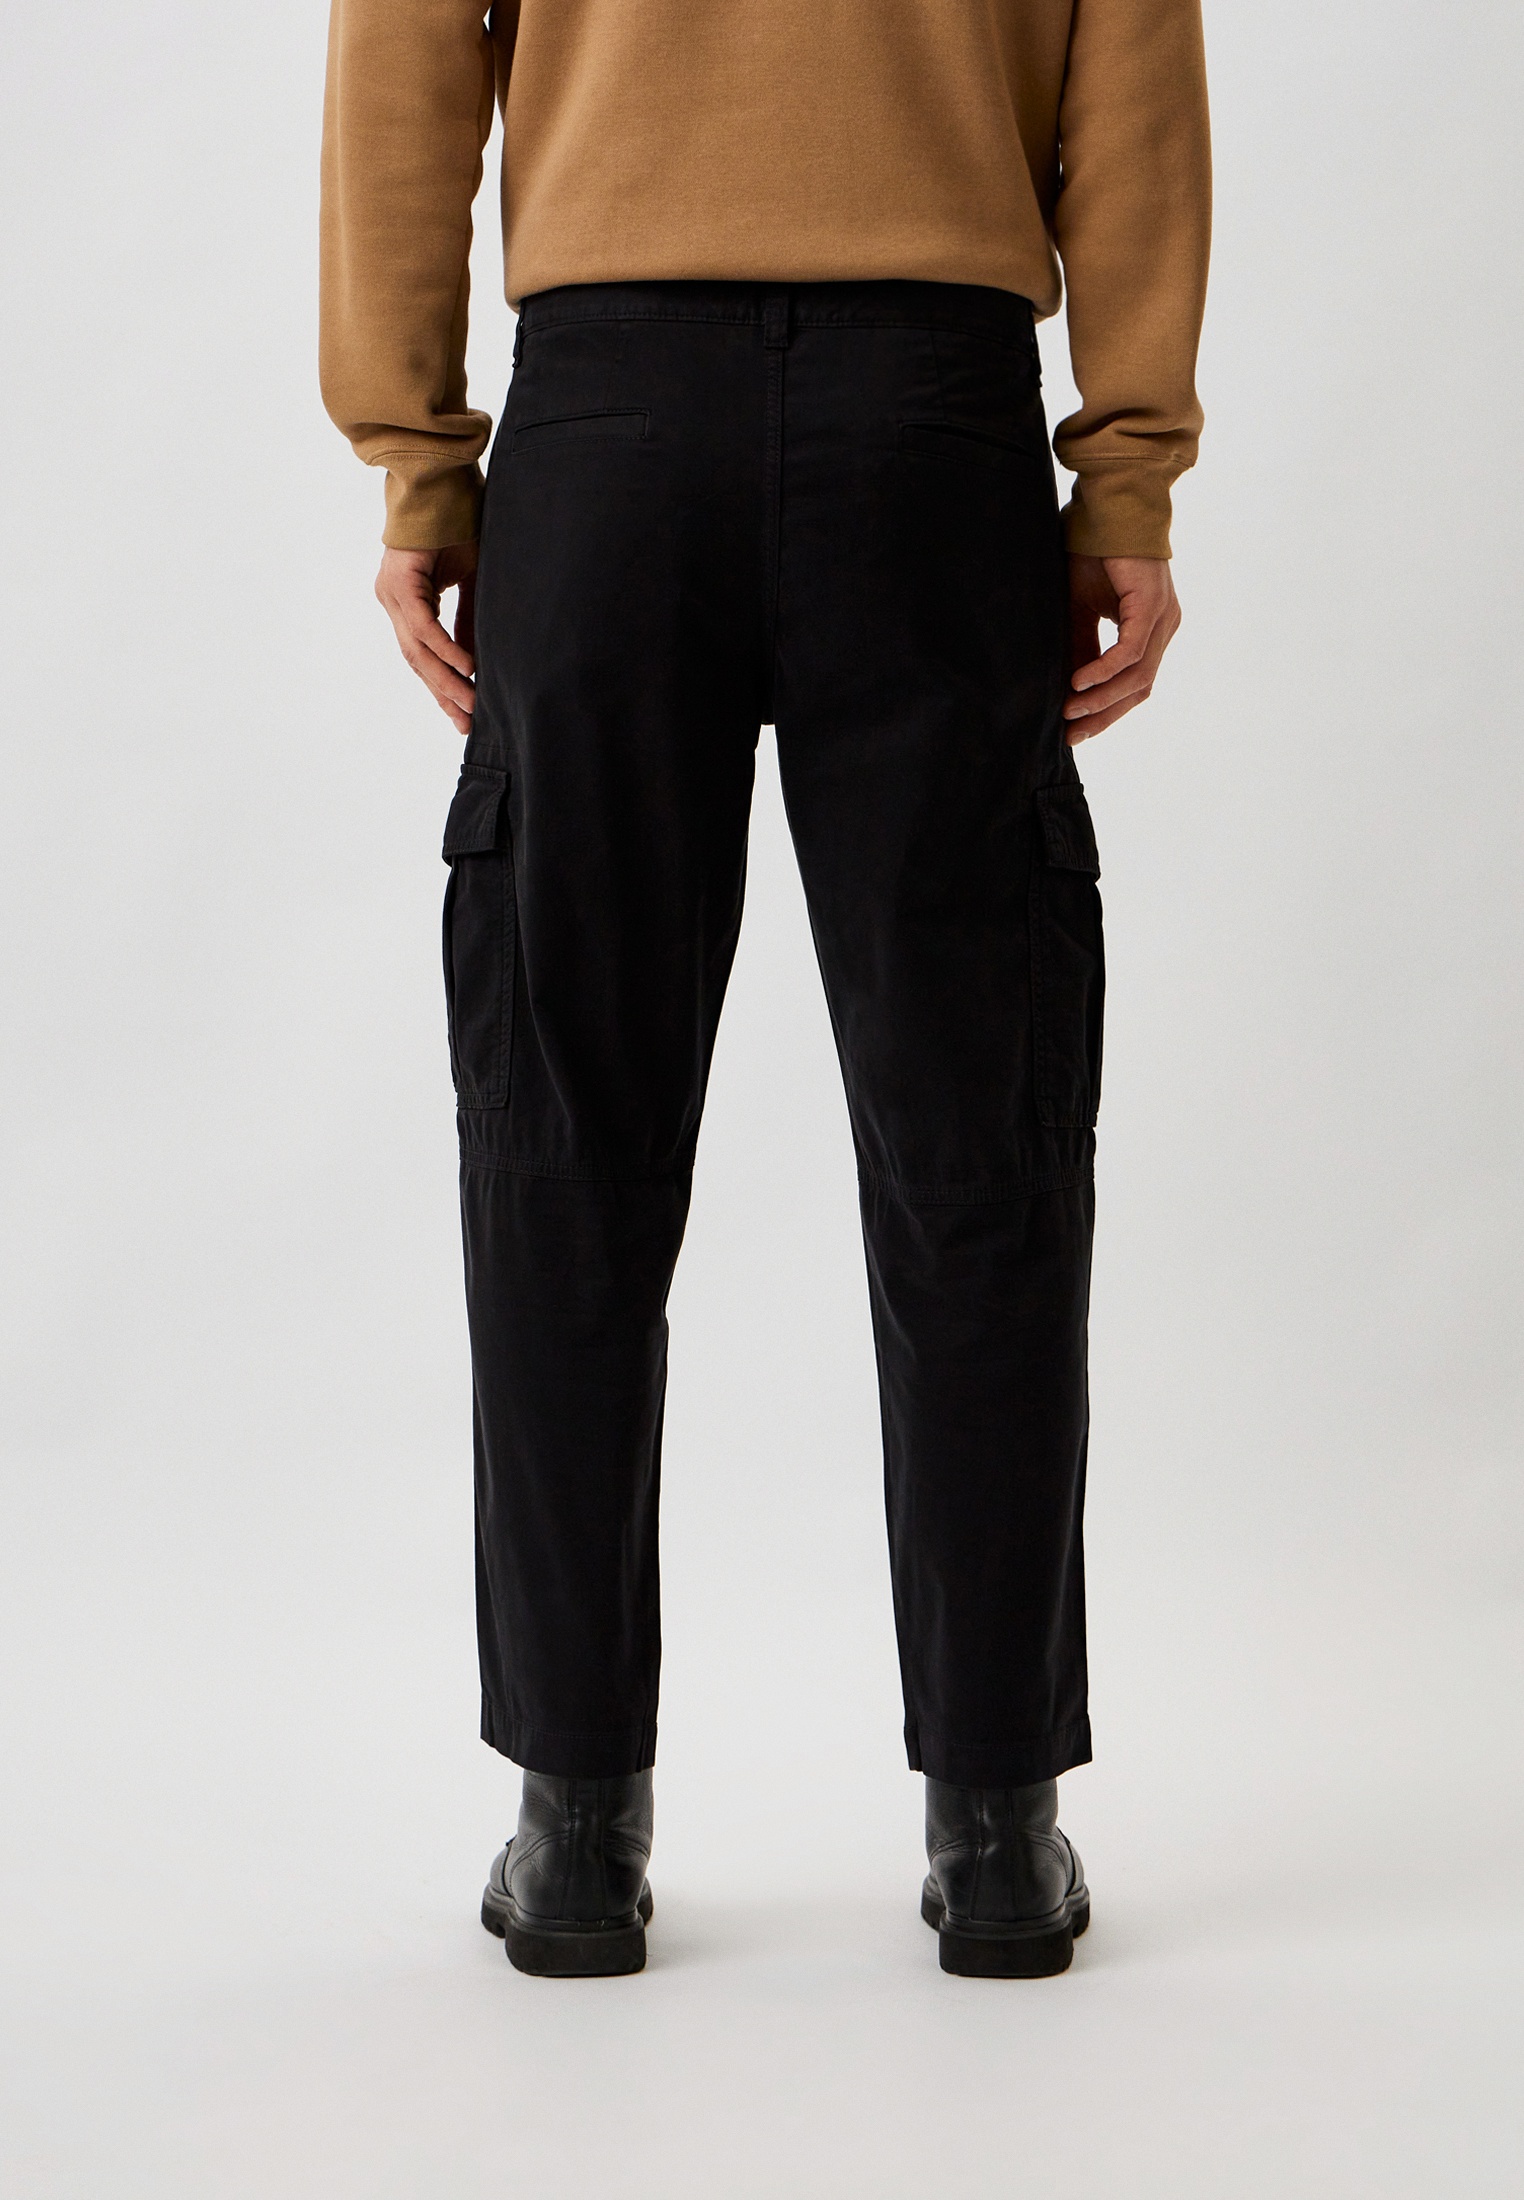 Мужские повседневные брюки Boss (Босс) 50501614: изображение 3